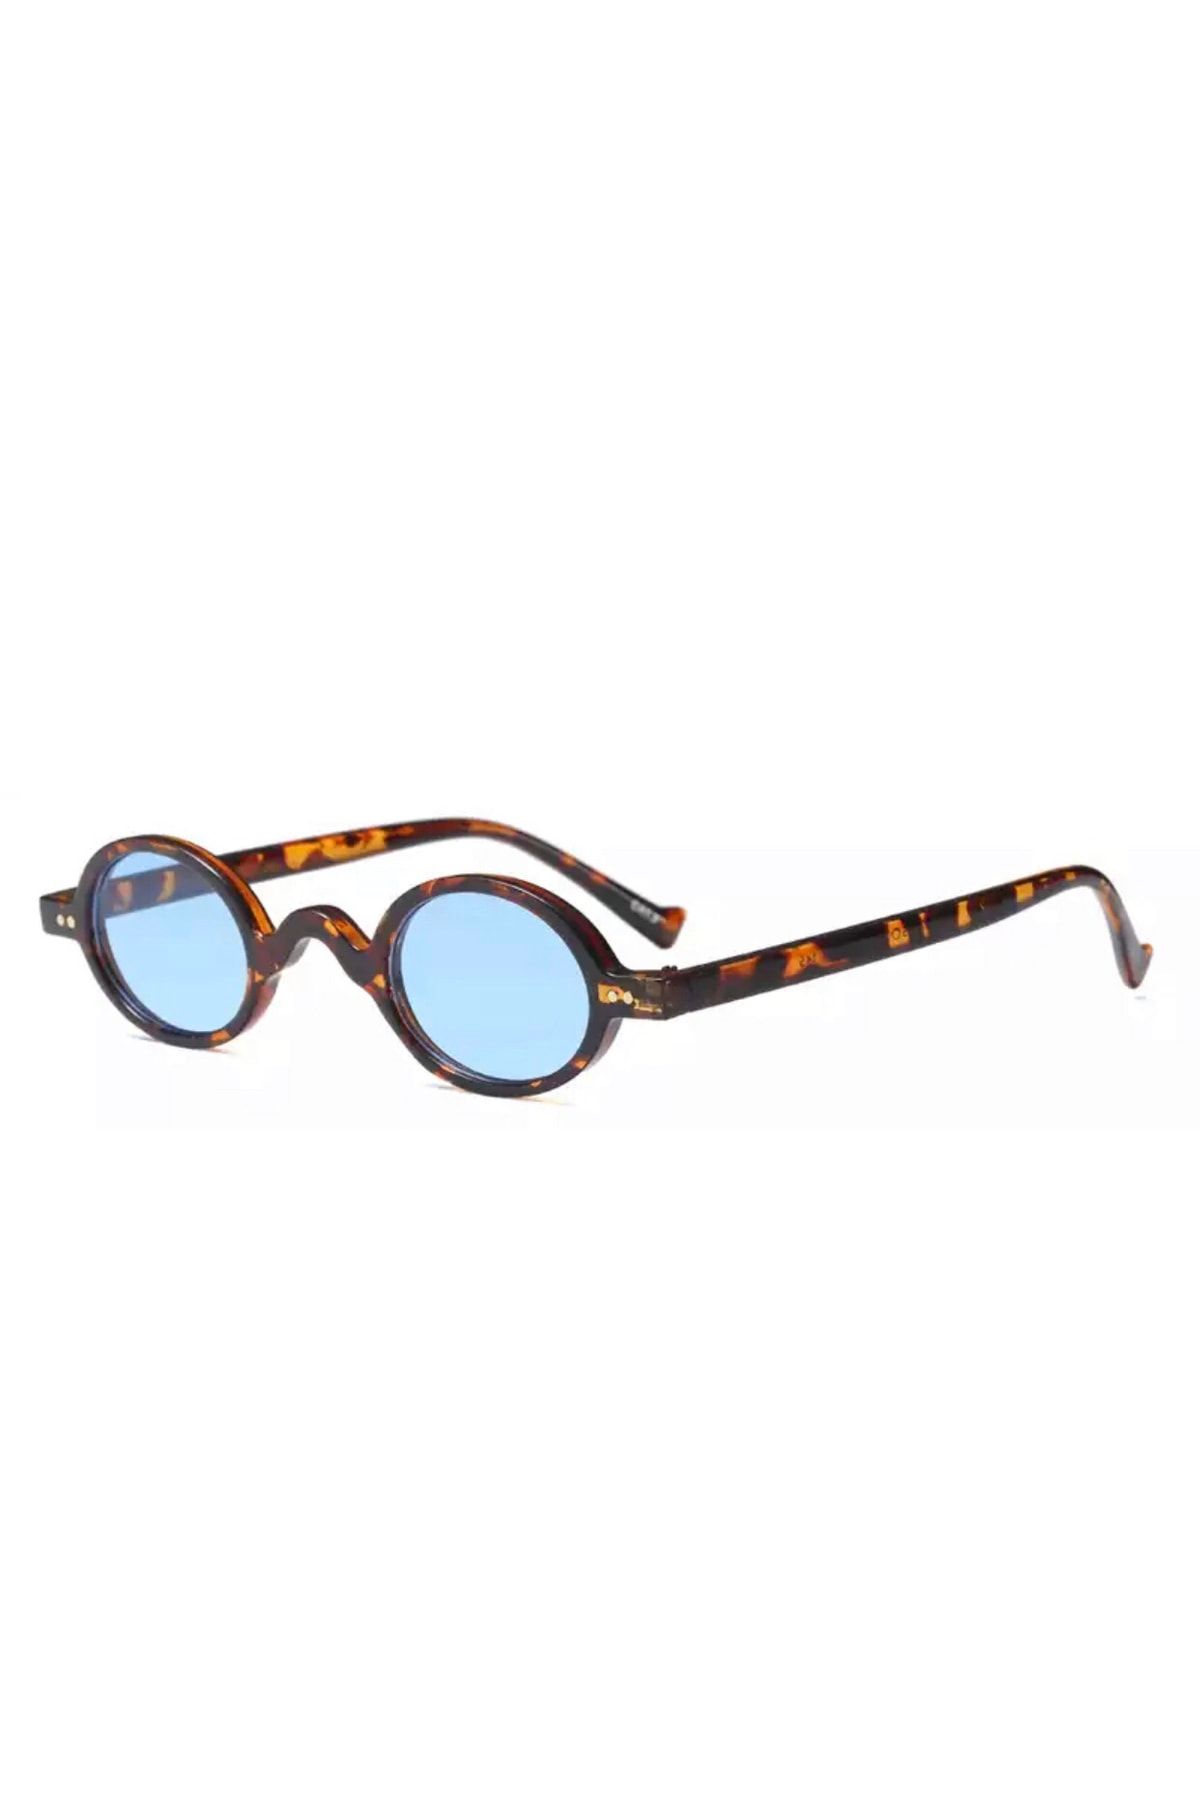 By Design Sunglasses Unisex Mavi Küçük Leopar Retro Çerçeveli Güneş Gözlüğü